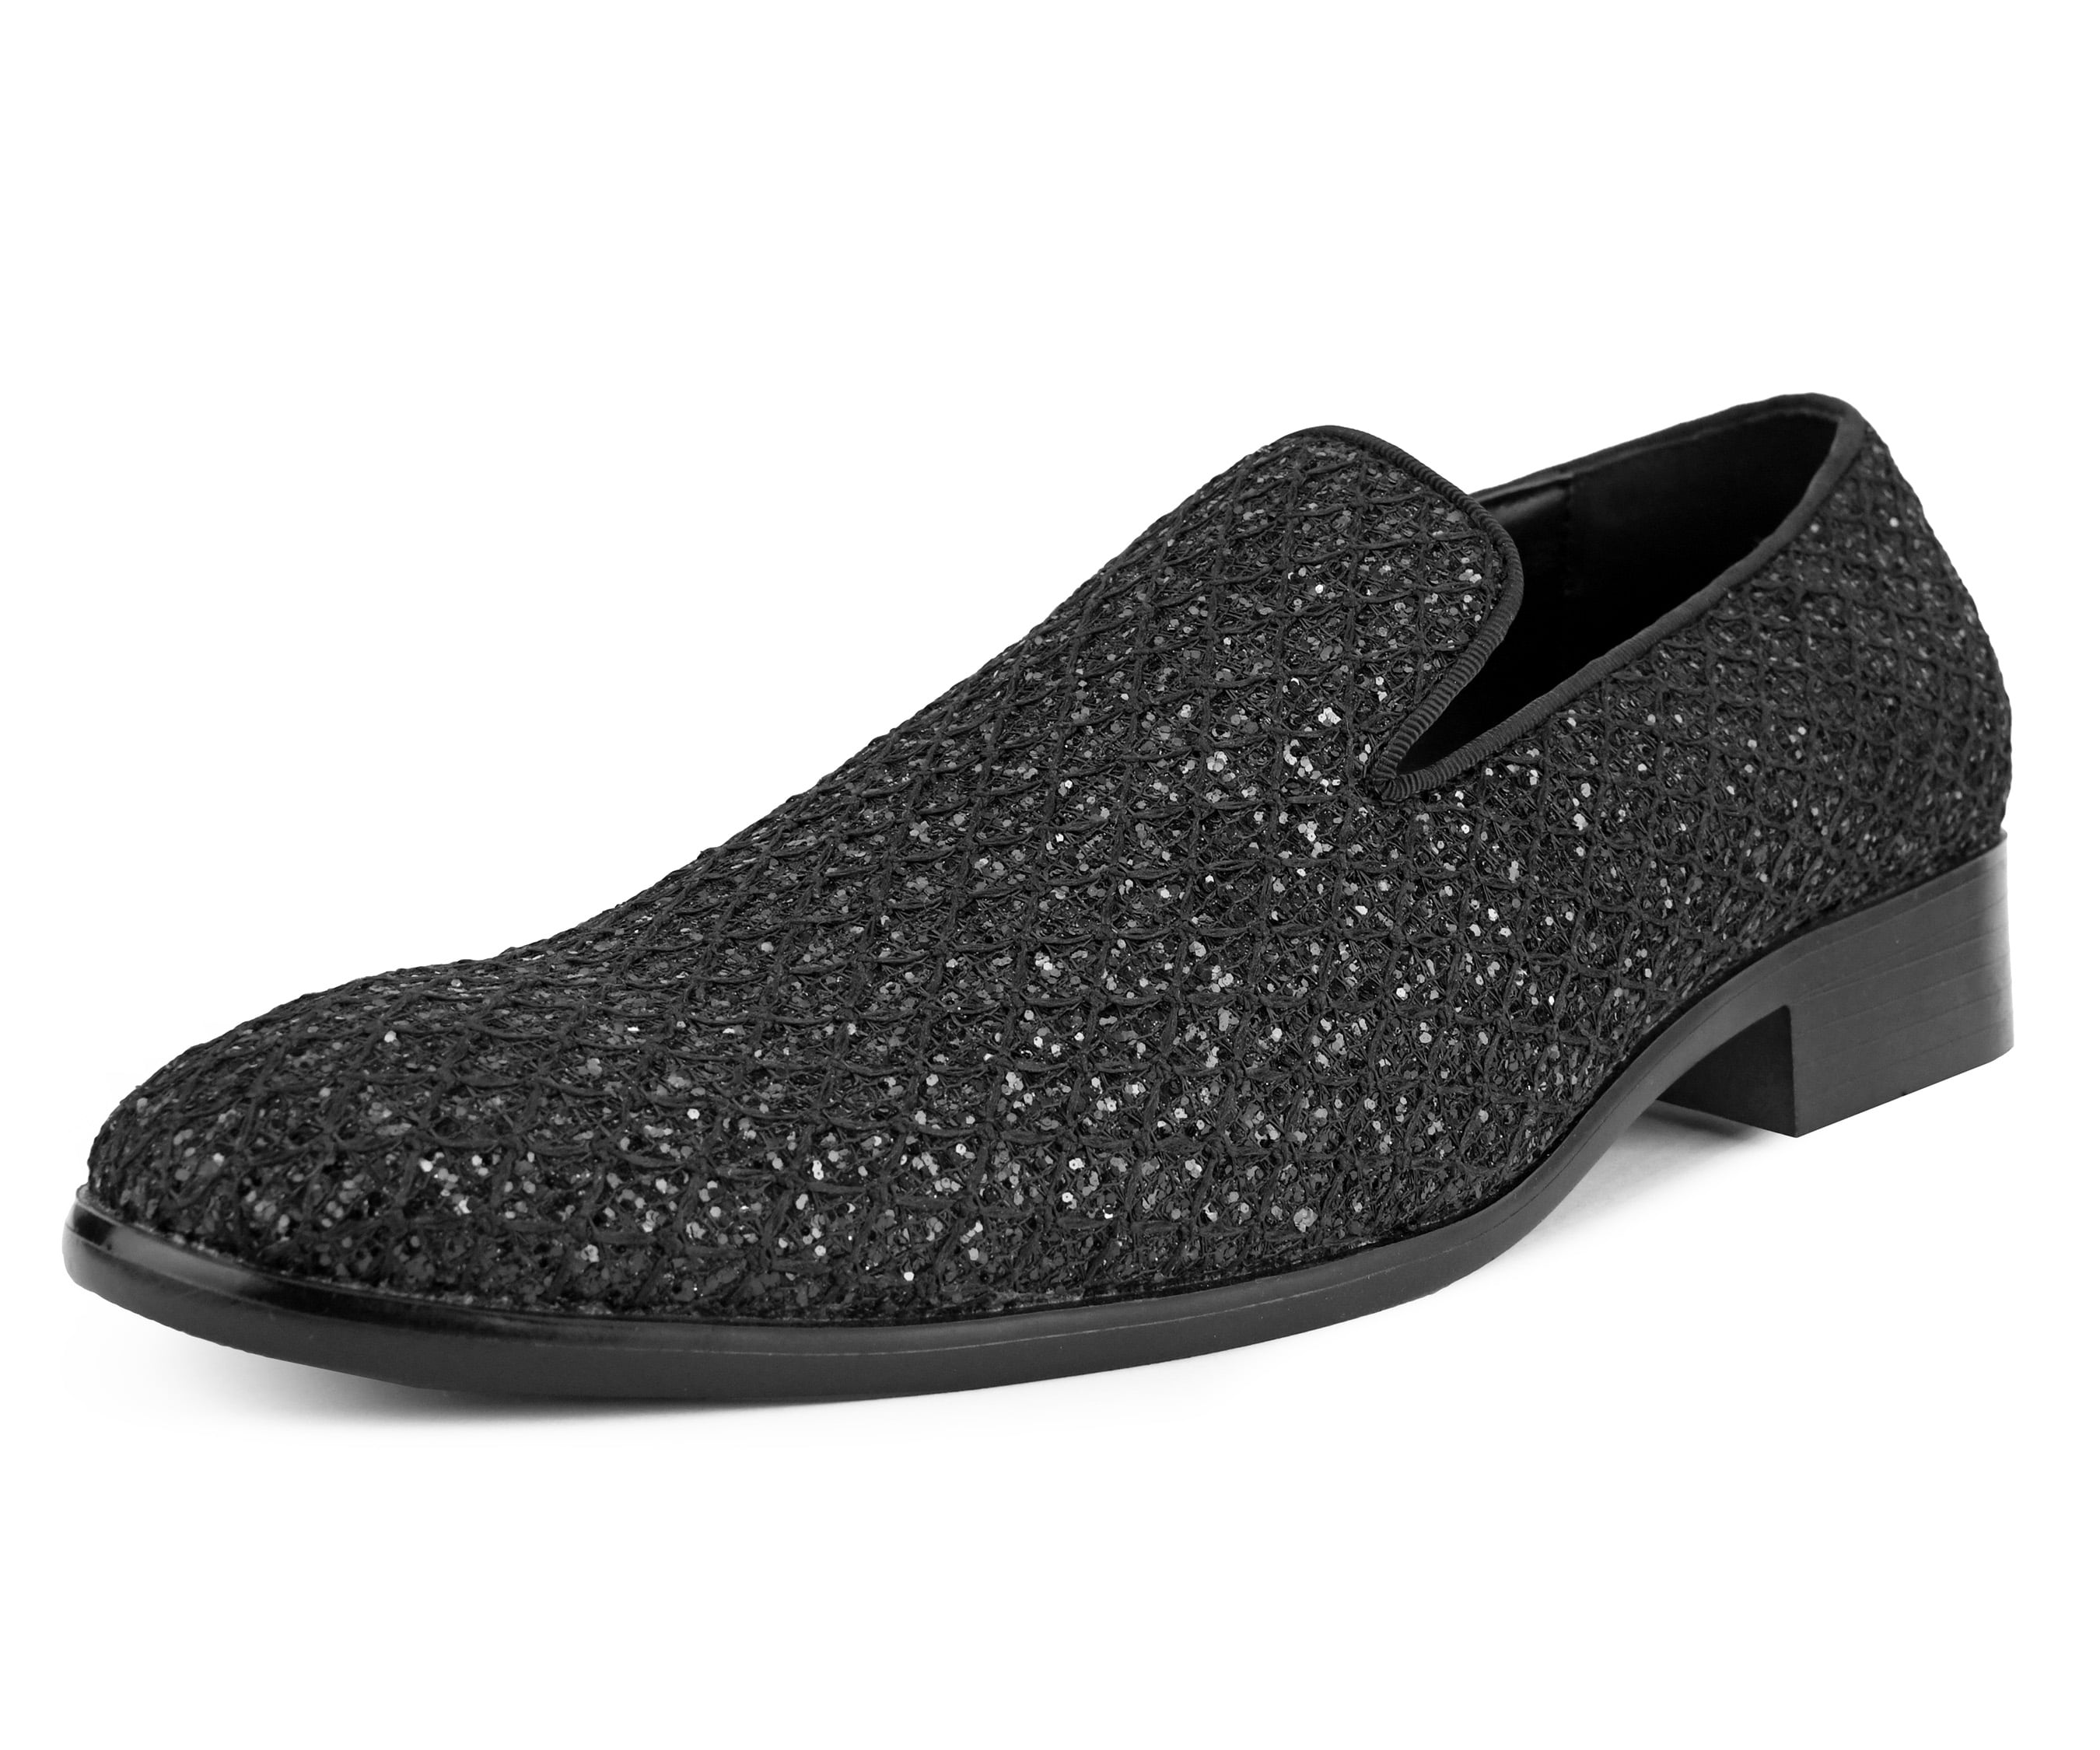 New Mens Sparkling Glitter Black Tuxedo Loafers Shoes Formal Dress Shoe Slip On 